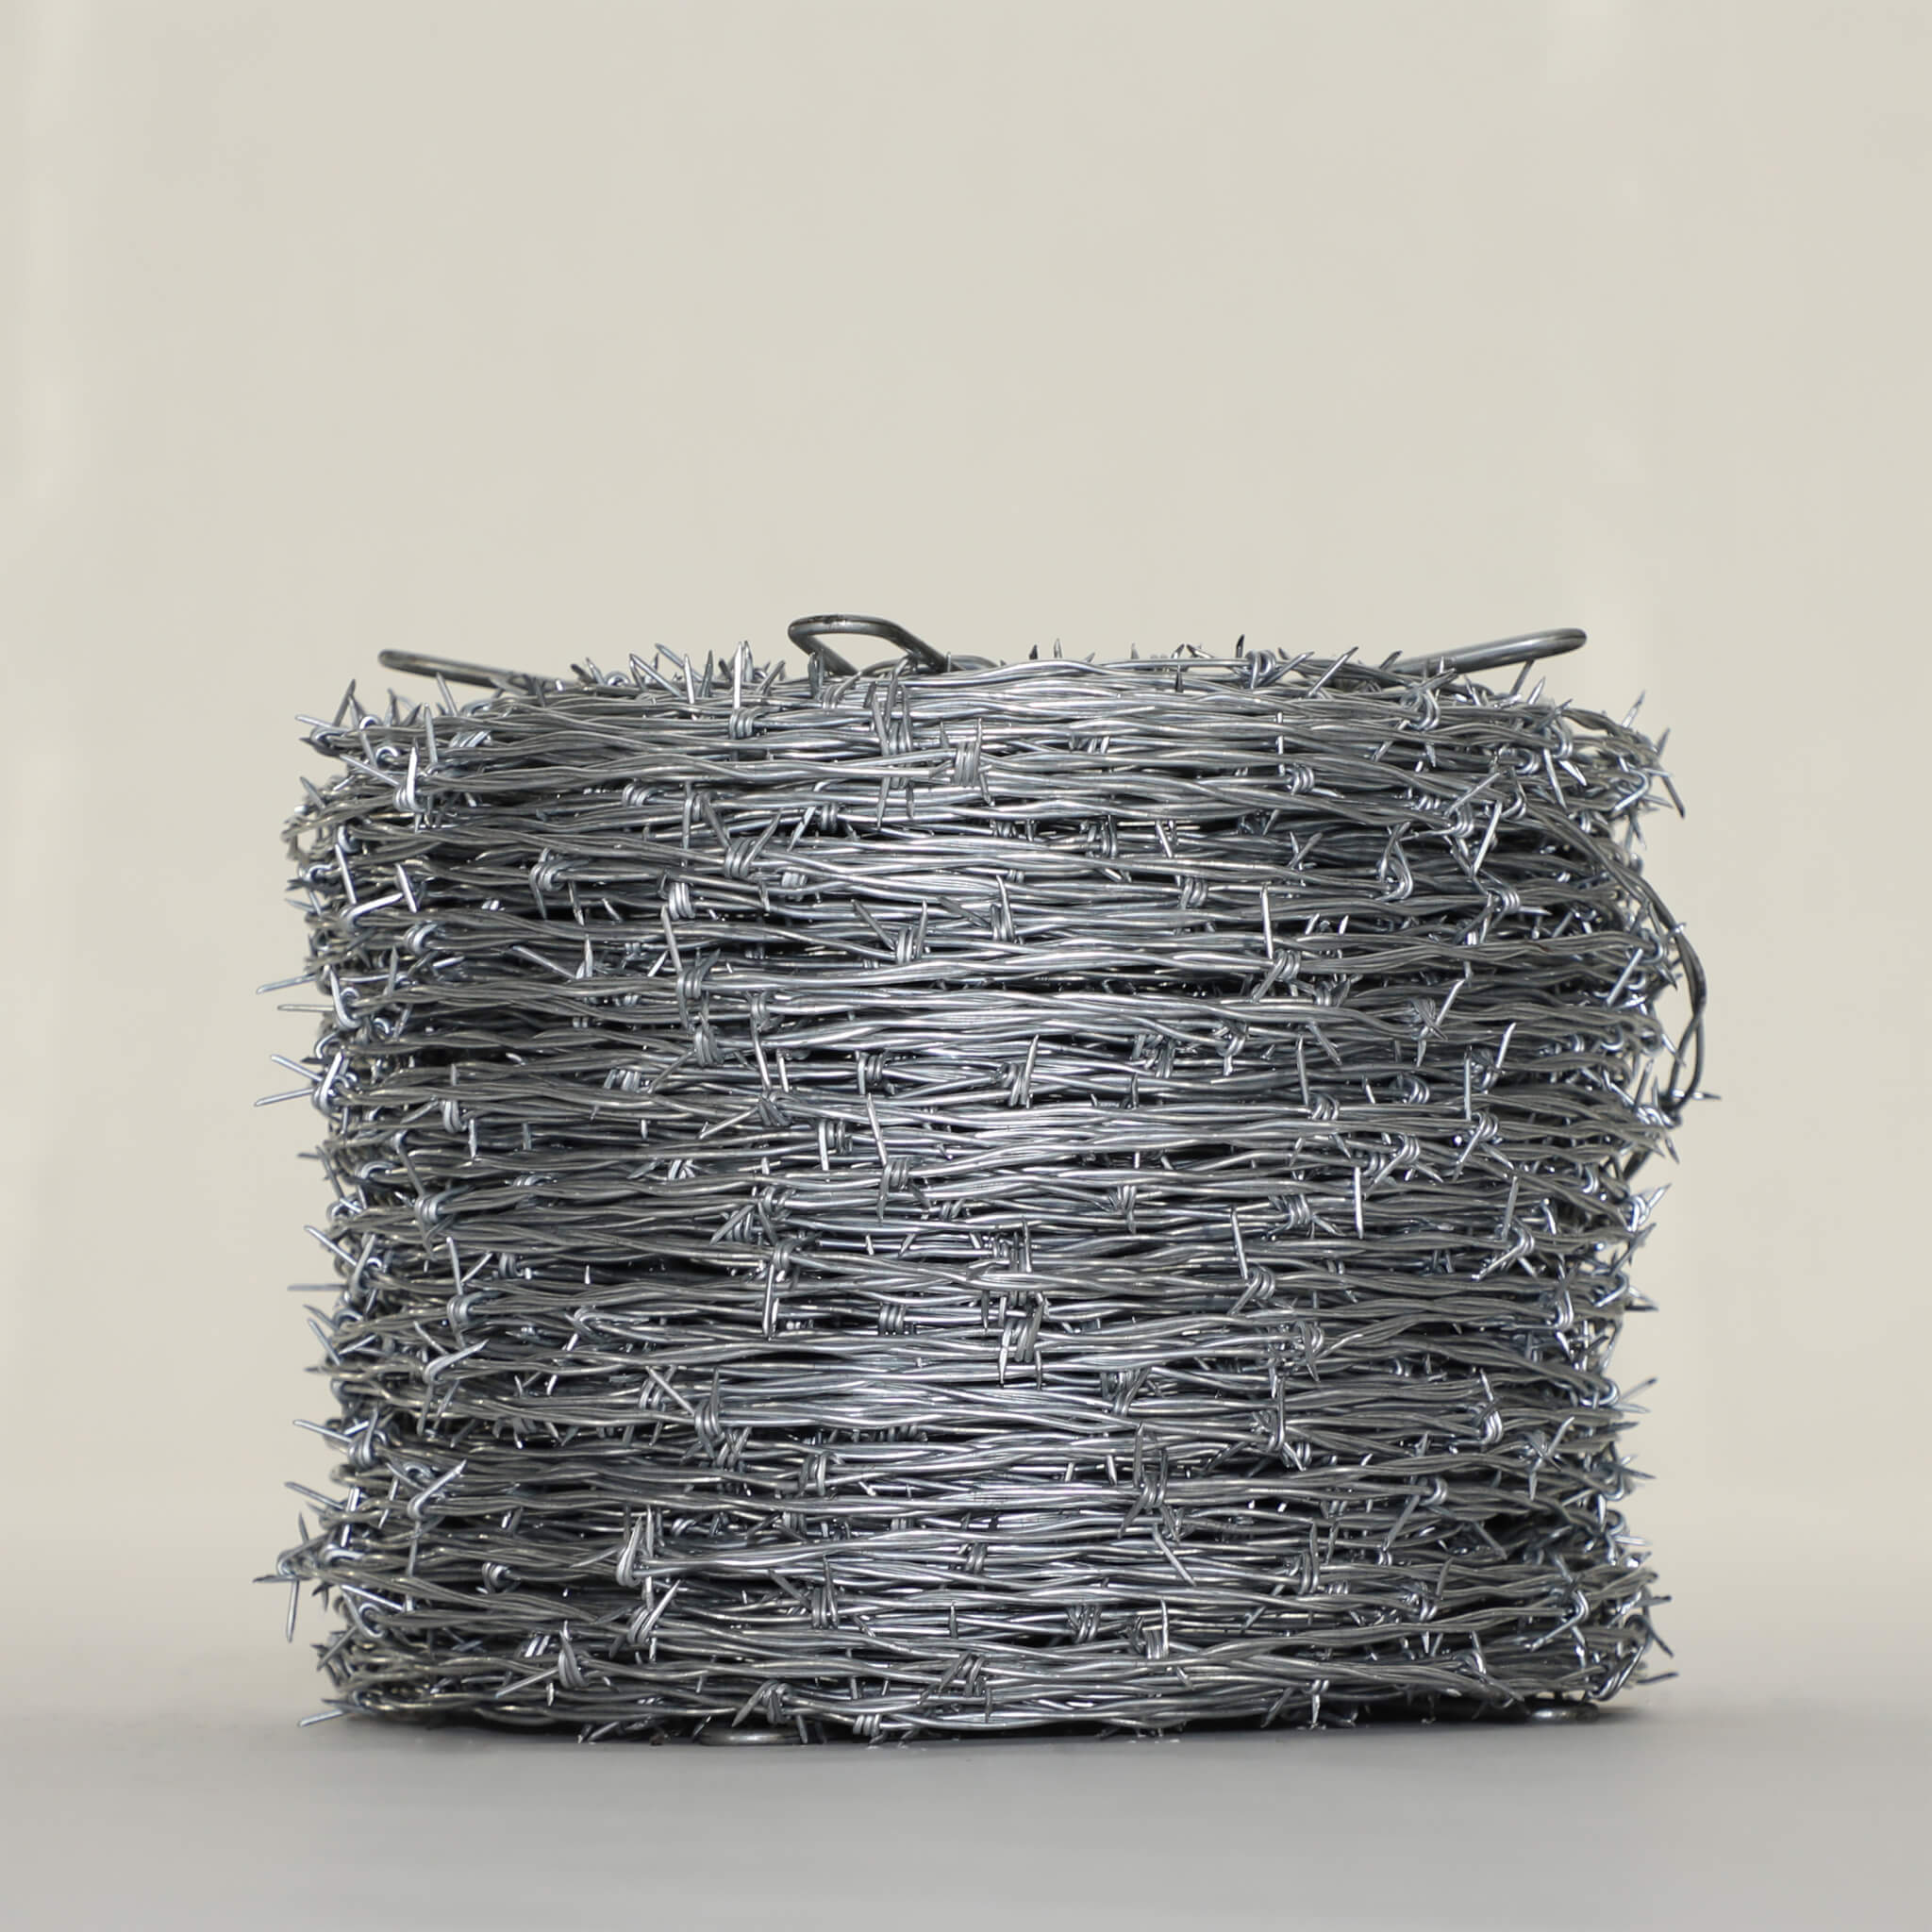 سستي قيمت ھول سيل Galvanized Barbed Wire Customized Specifications Featured Image سان